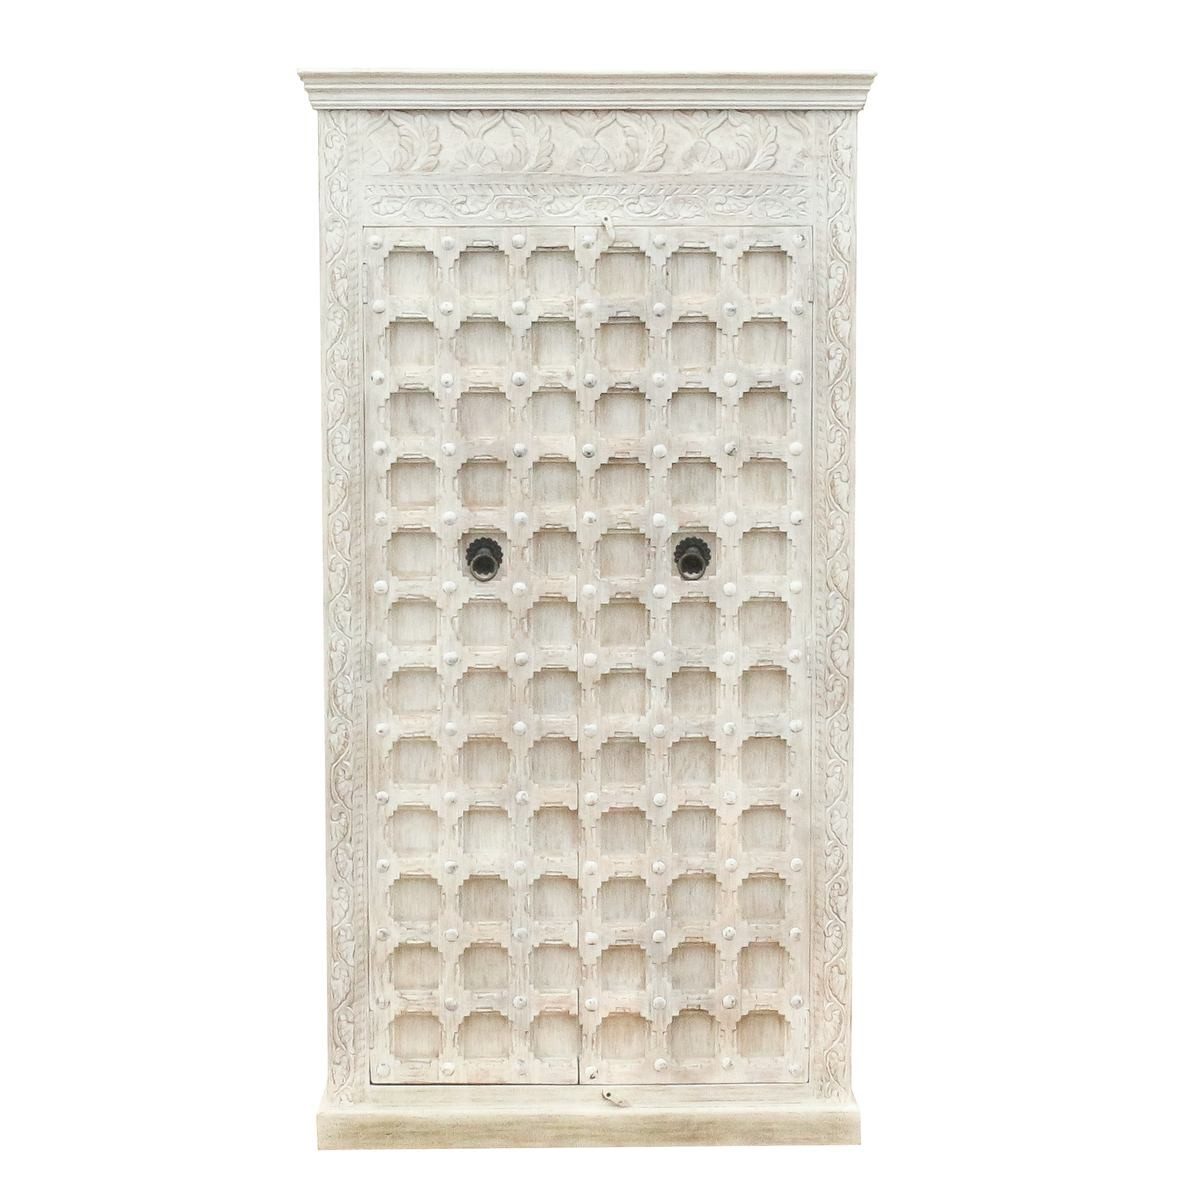 Oriental Galerie Mehrzweckschrank Weißer Schrank Khara Indien 190 cm Wohnzimmerschrank, Küchenschrank, Massivholz Antik